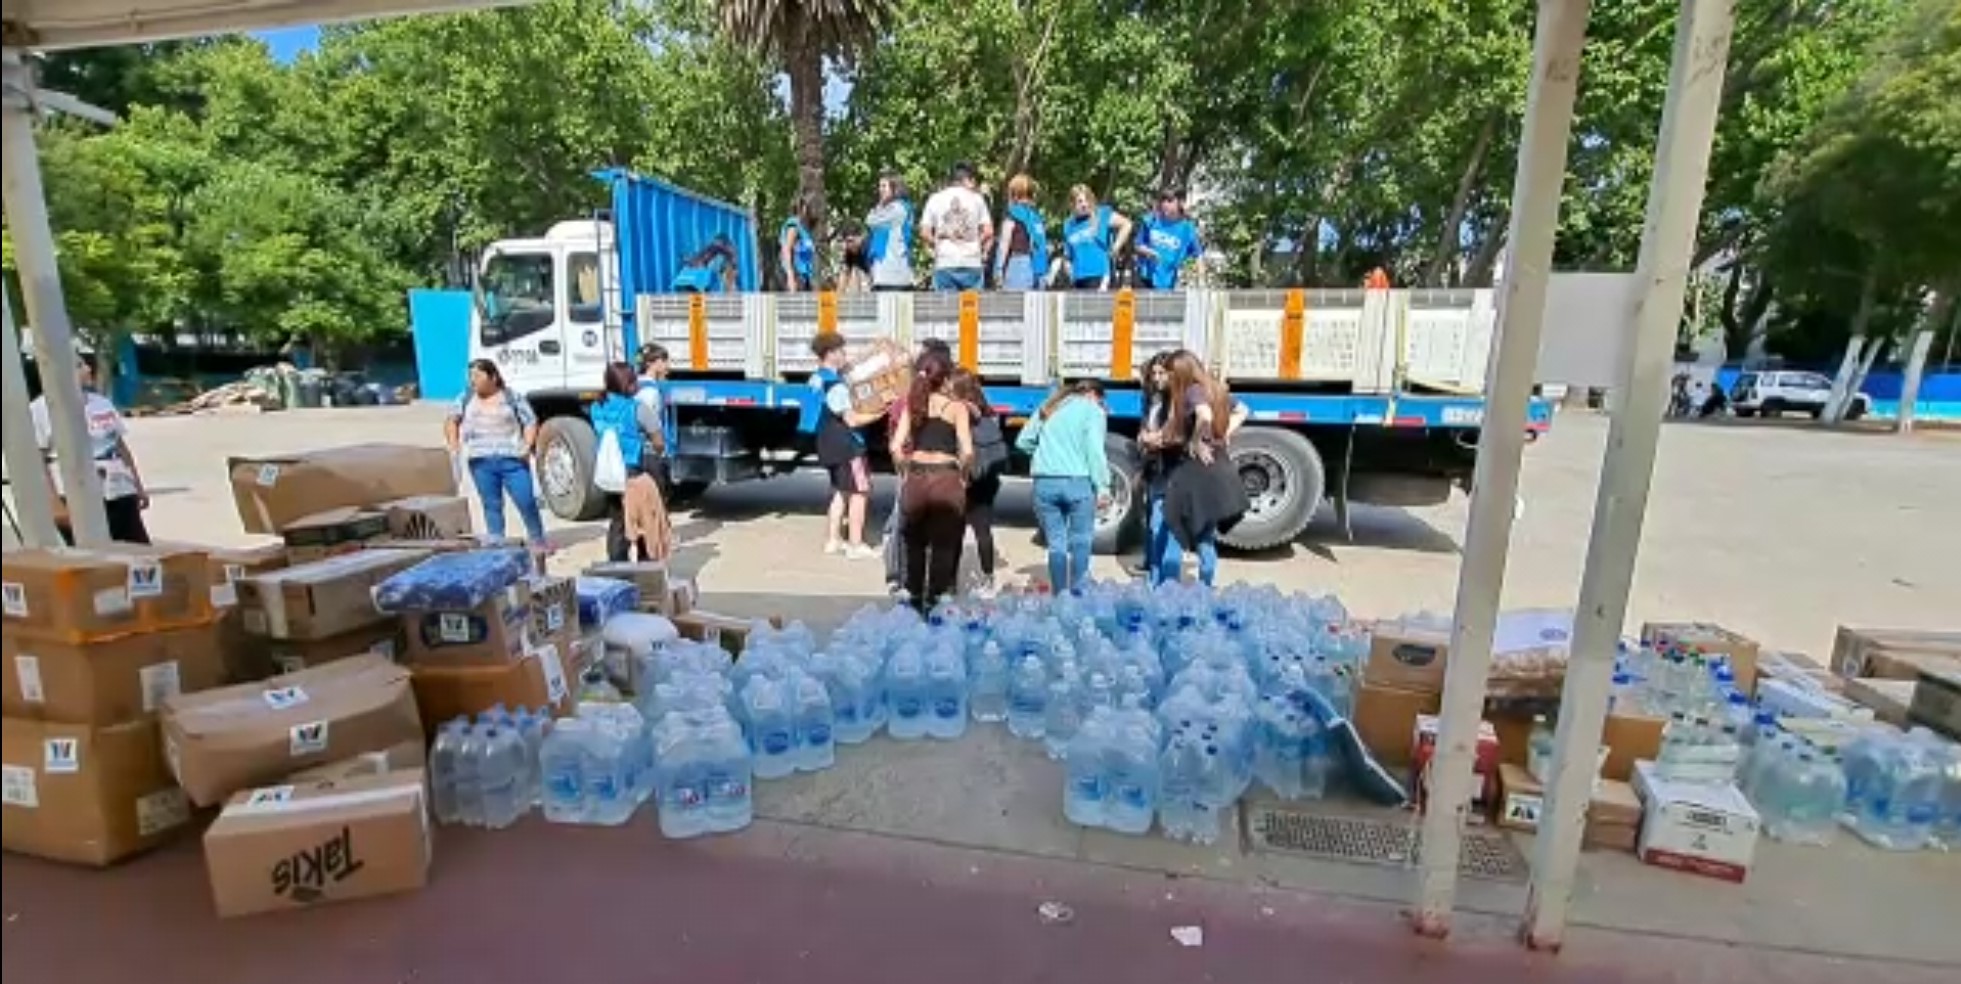 SAN ESTEBAN: Equipos municipales de San Esteban trasladaron donaciones de los vecinos a Viña del Mar para apoyar a habitantes afectados por incendios